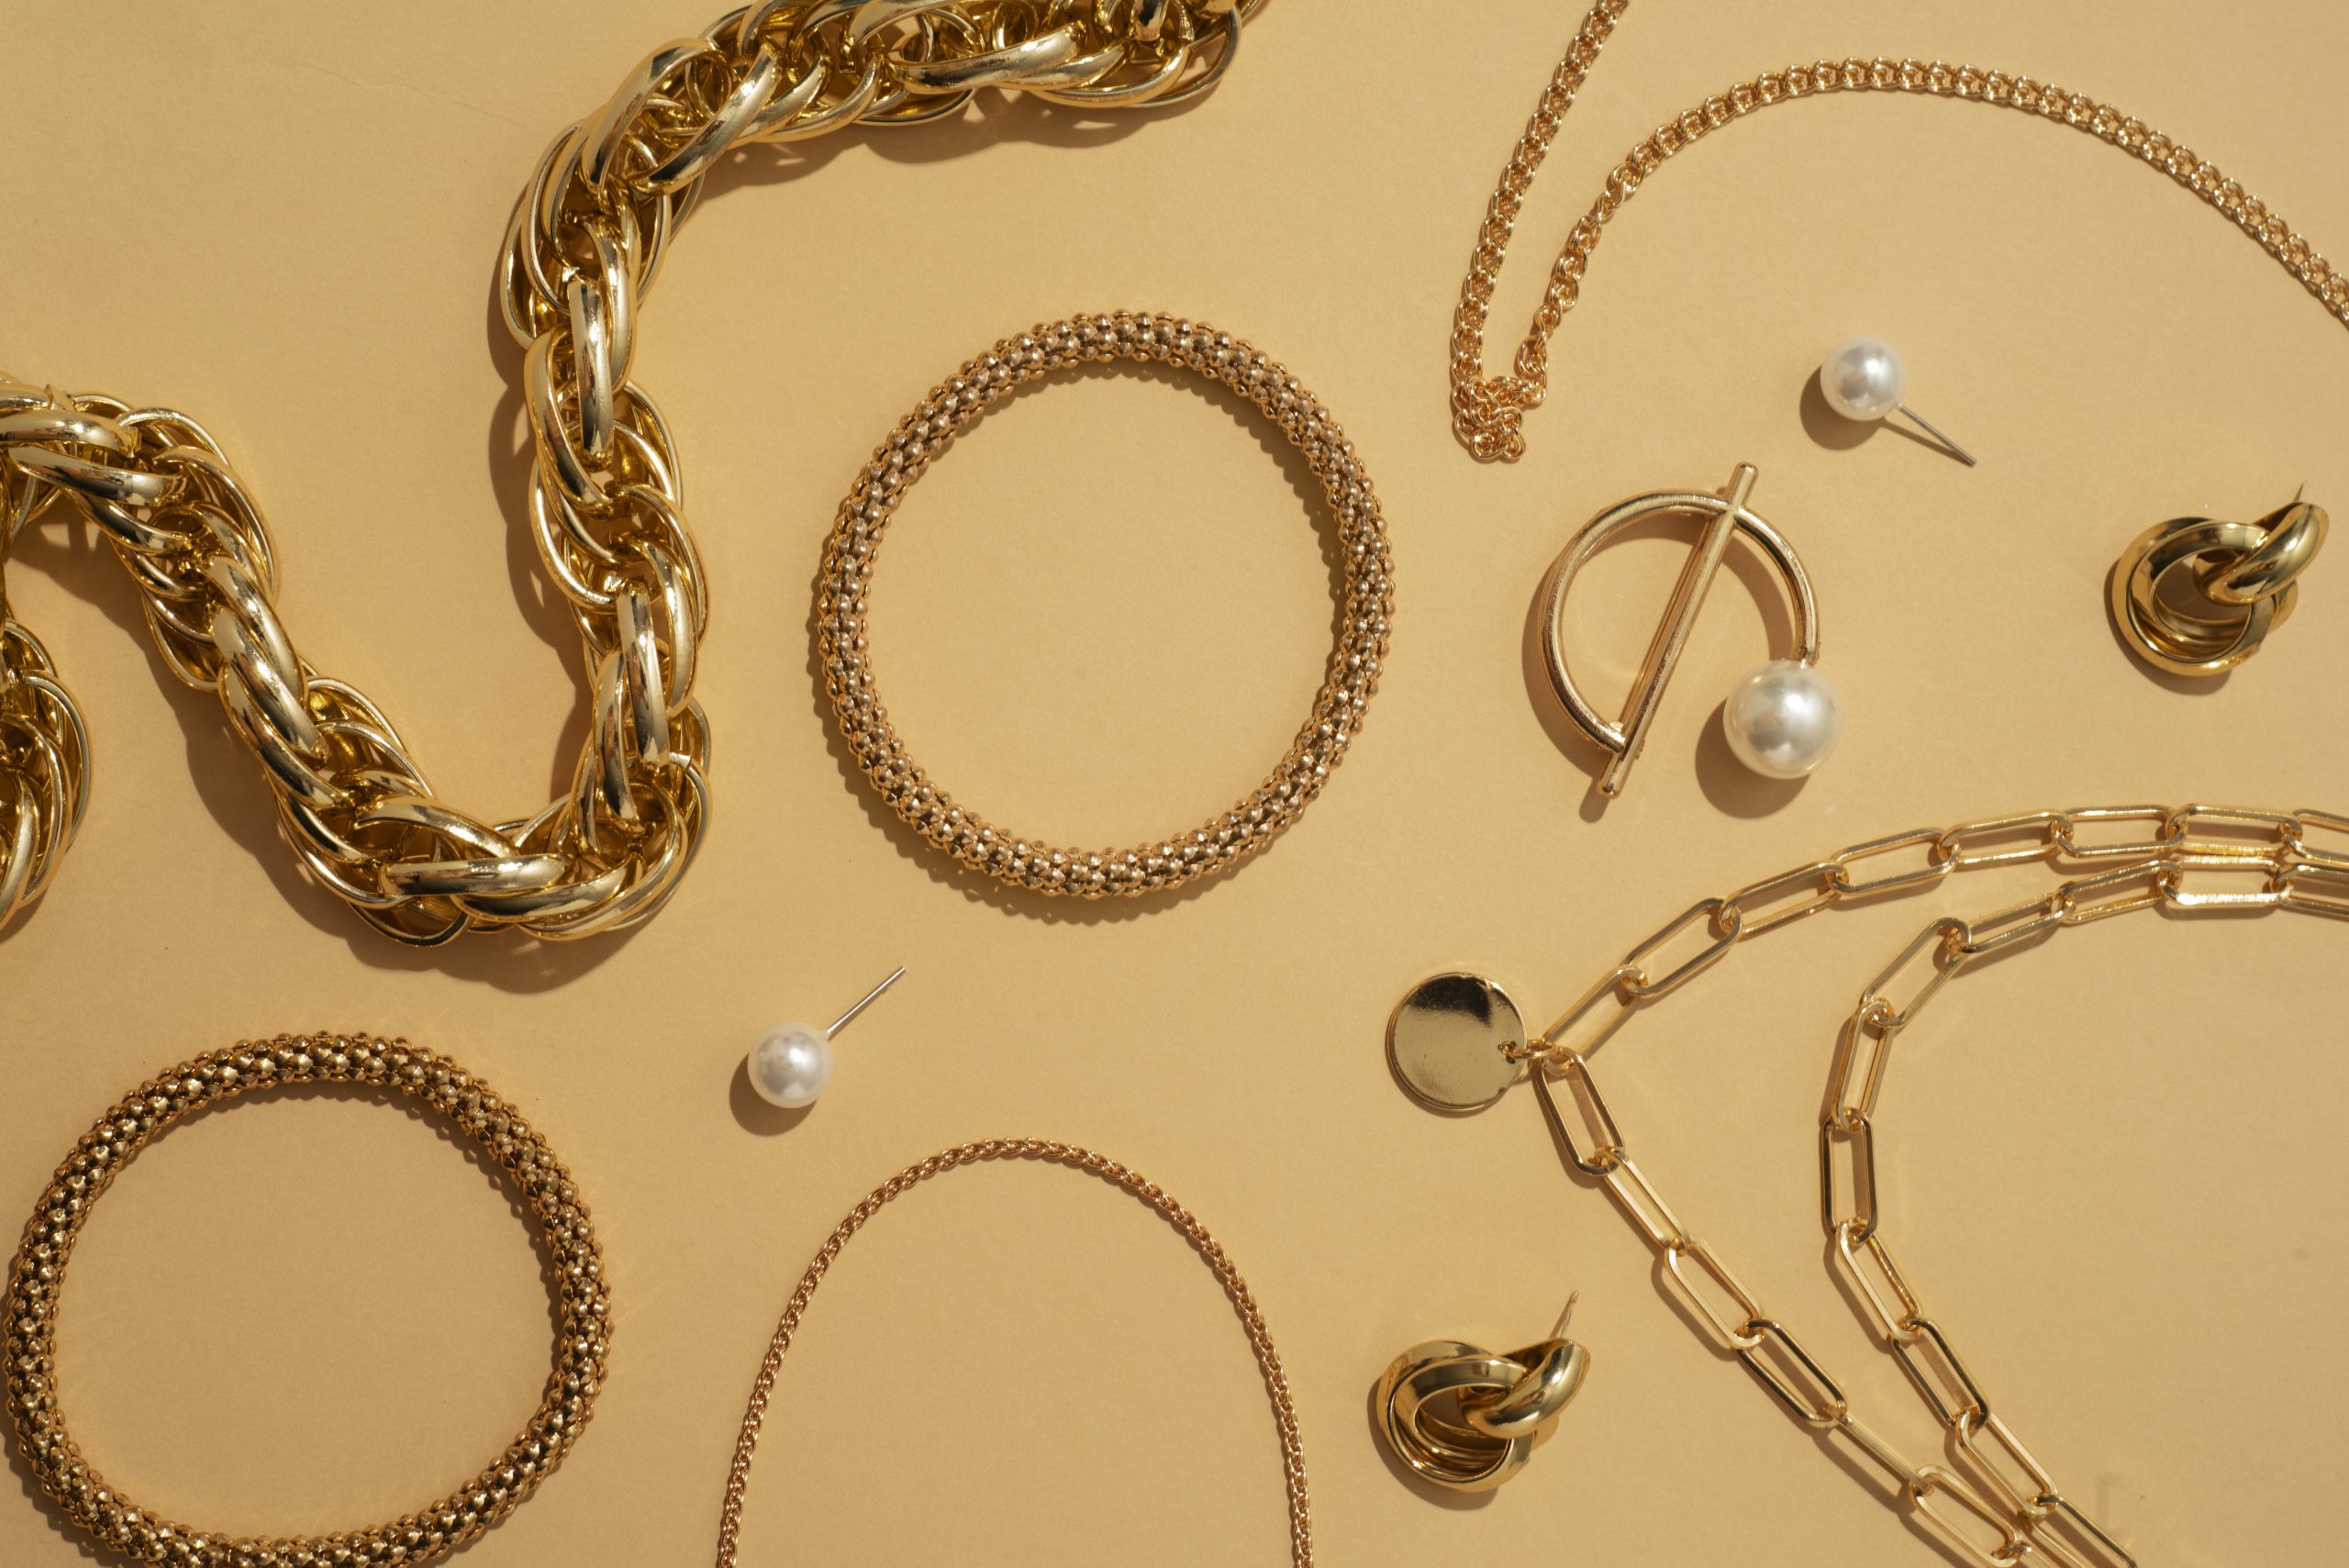 laté šperky - doplňky ke zlatým šatům